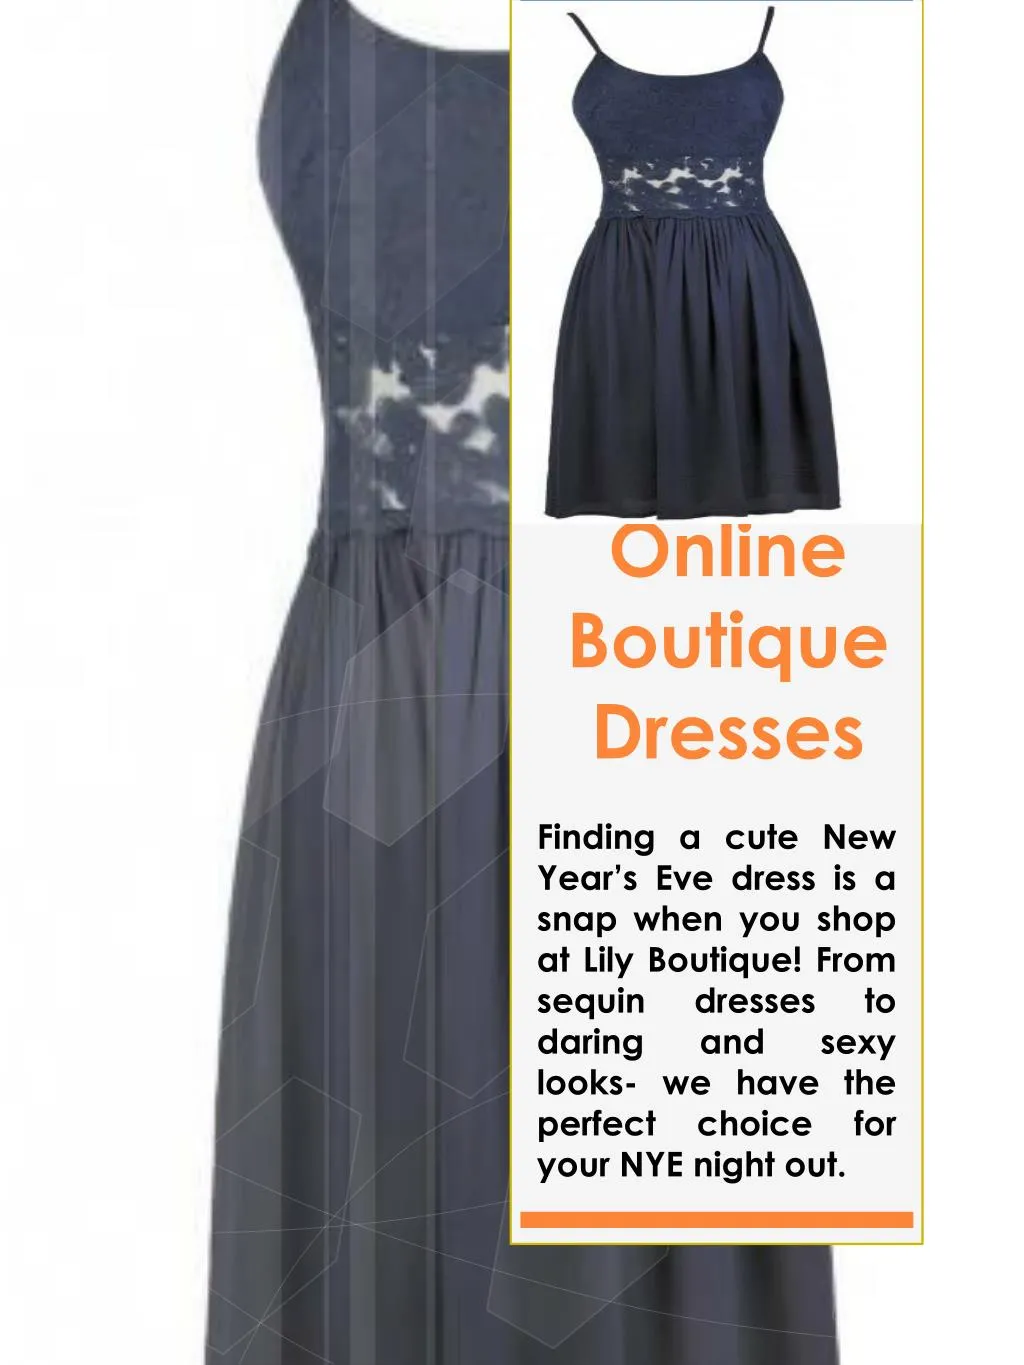 online boutique dresses n.